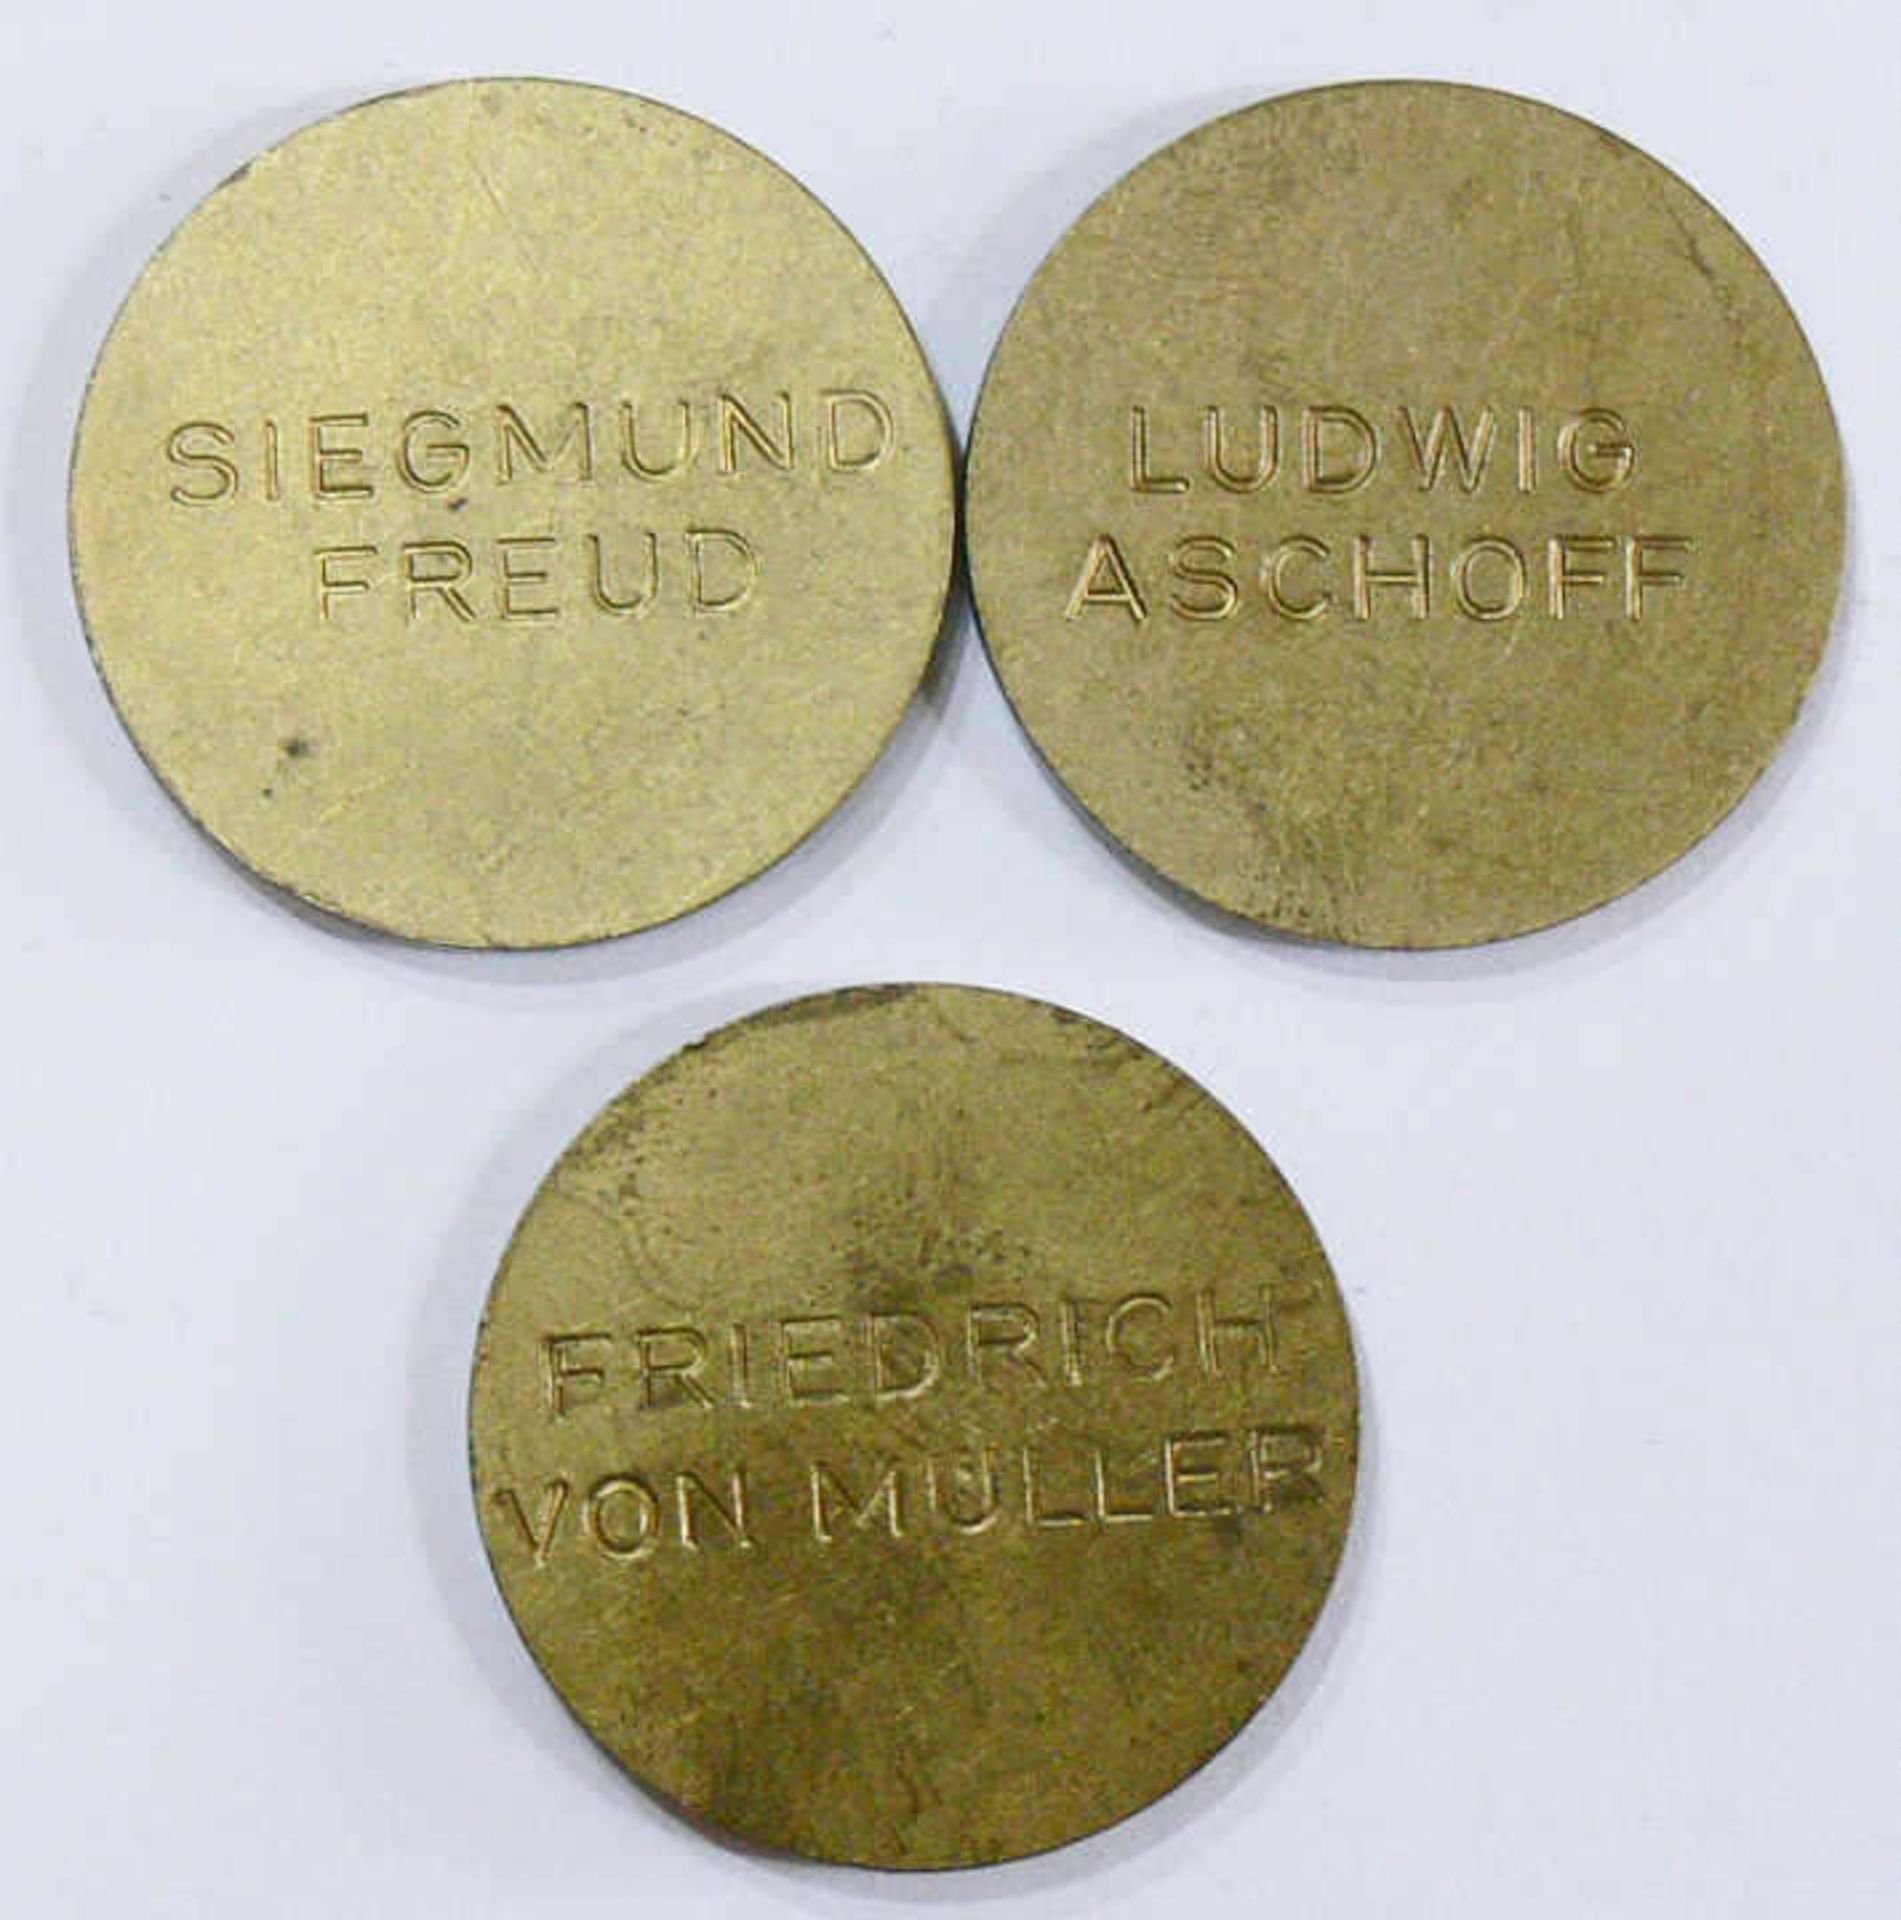 Lot Gedenk - Medaillen, Sigmund Freud, Ludwig Aschoff, Friedrich von Müller. Bitte besichtigen. - Bild 2 aus 2